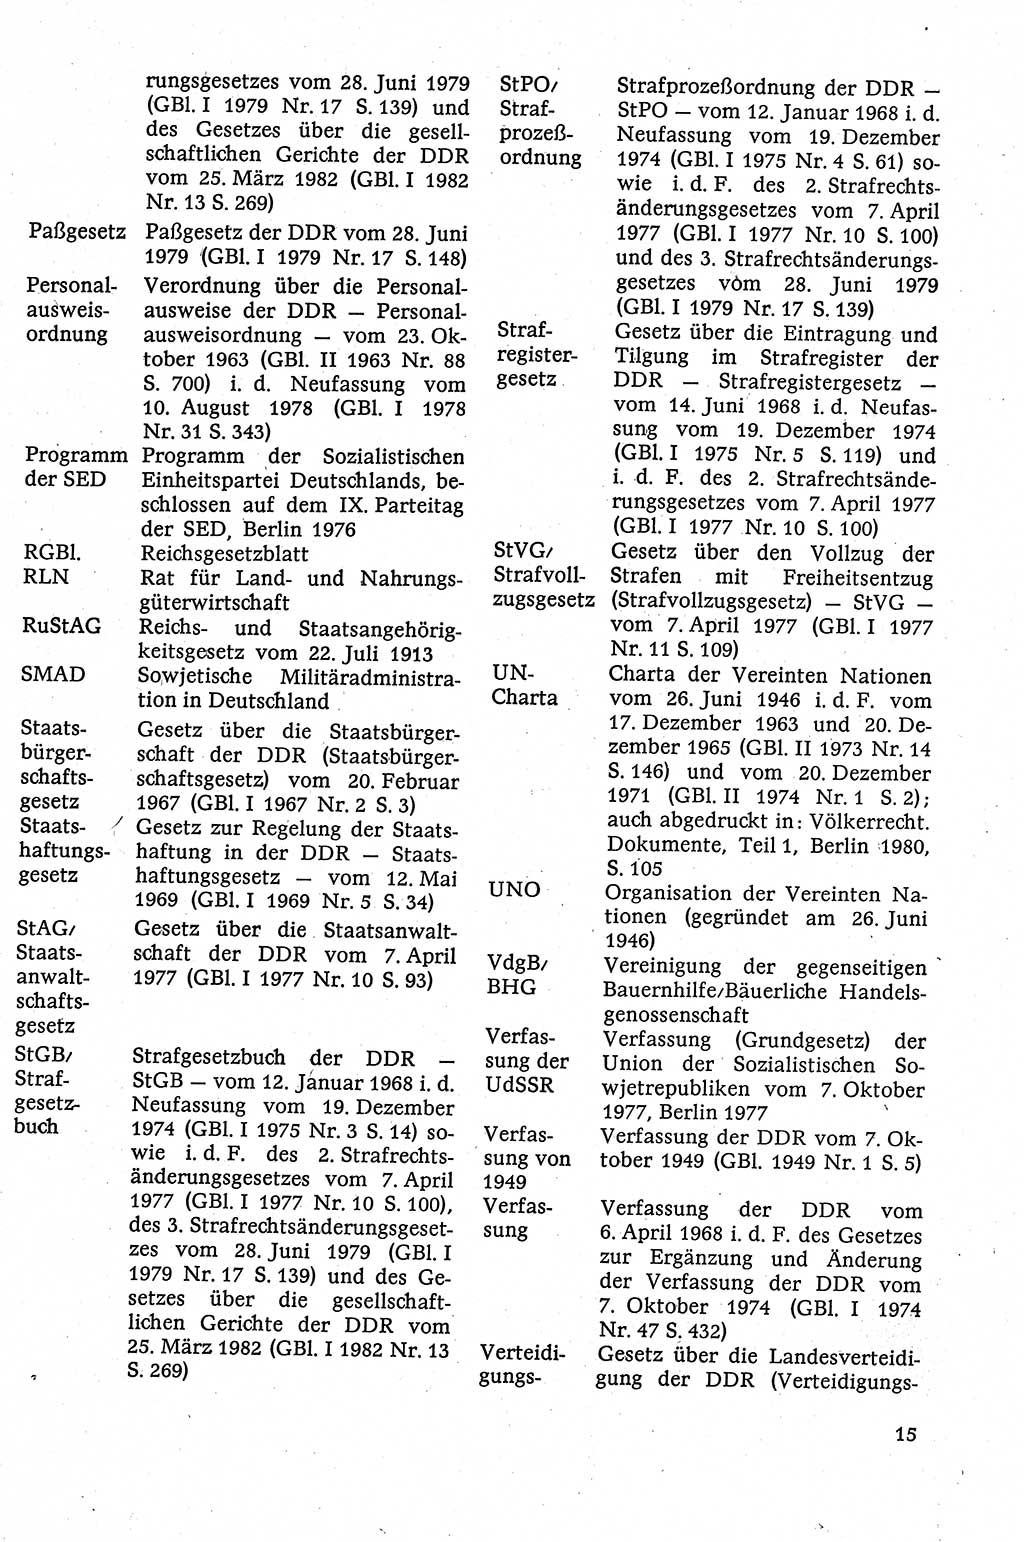 Staatsrecht der DDR [Deutsche Demokratische Republik (DDR)], Lehrbuch 1984, Seite 15 (St.-R. DDR Lb. 1984, S. 15)